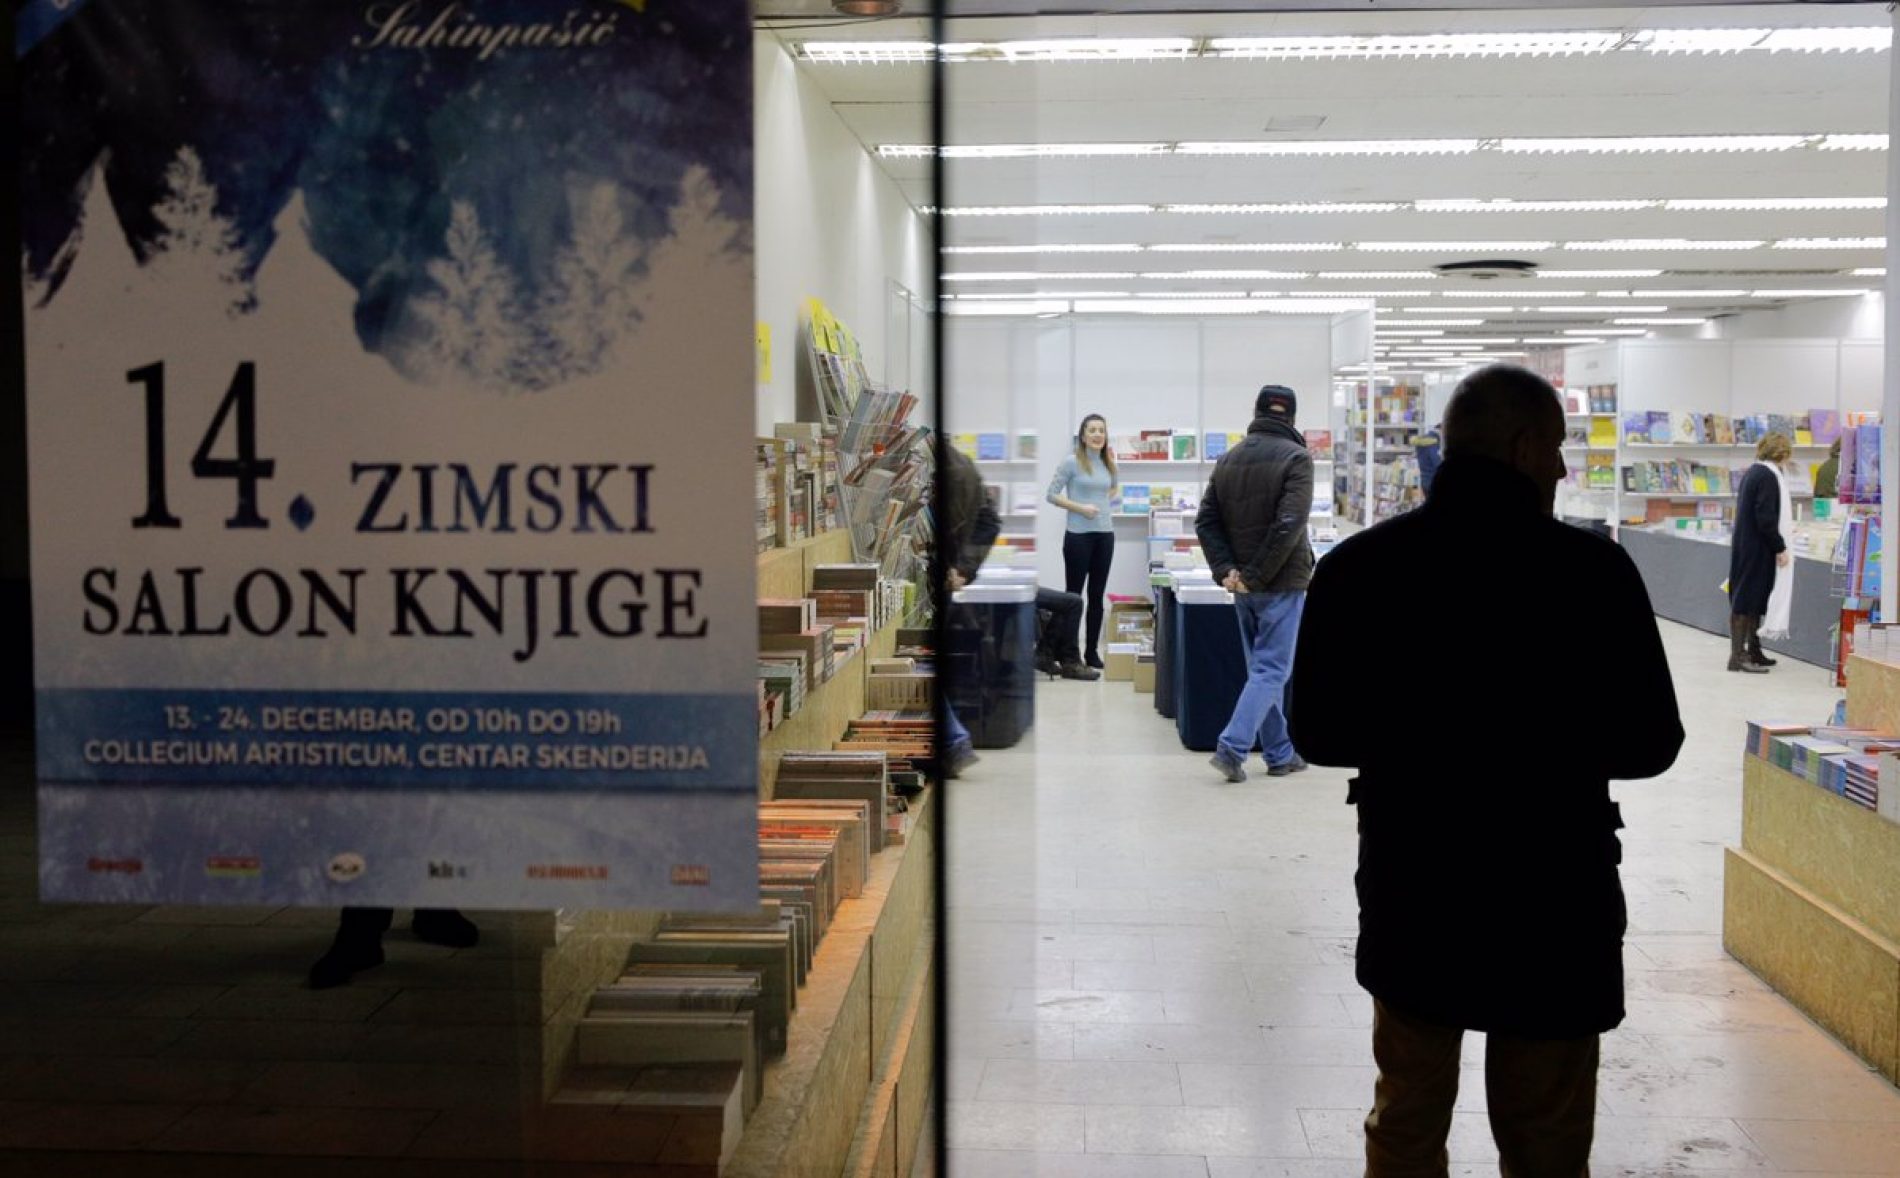 U Sarajevu otvoren 14. Zimski salon knjige: Prilika za kupovinu izdanja po povoljnim cijenama